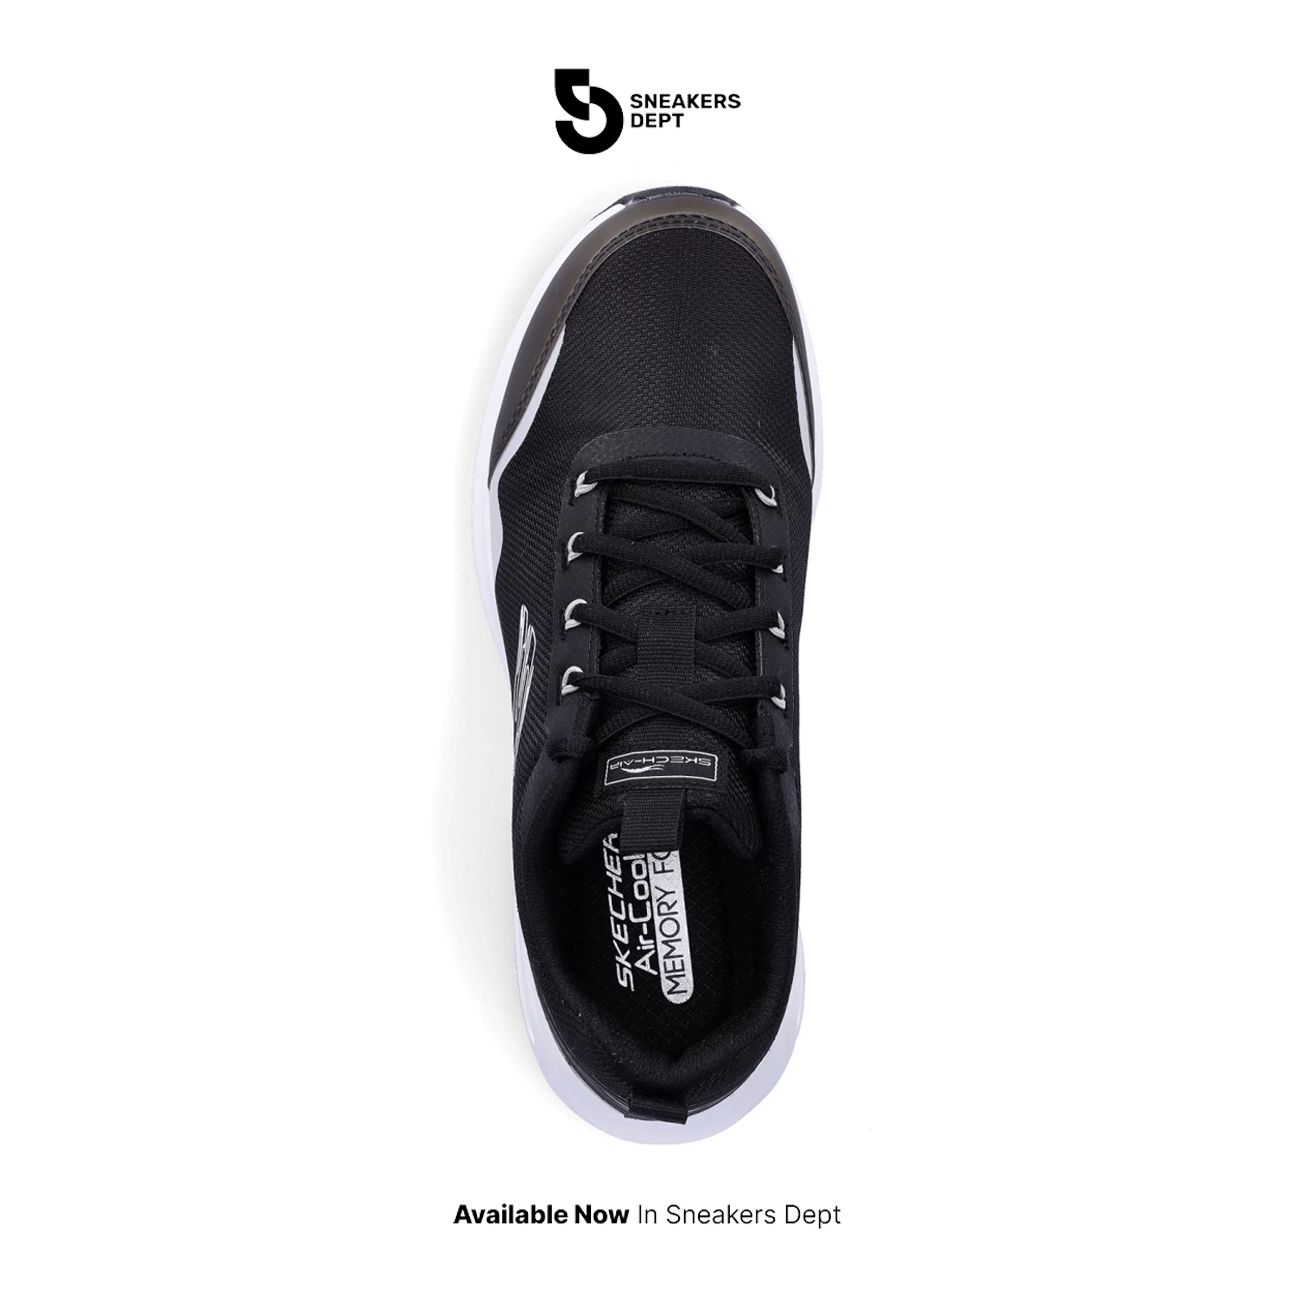 Sepatu Sneakers Wanita SKECHERS SKECH AIR COURT GOOD NEWS 149945BKW ORI